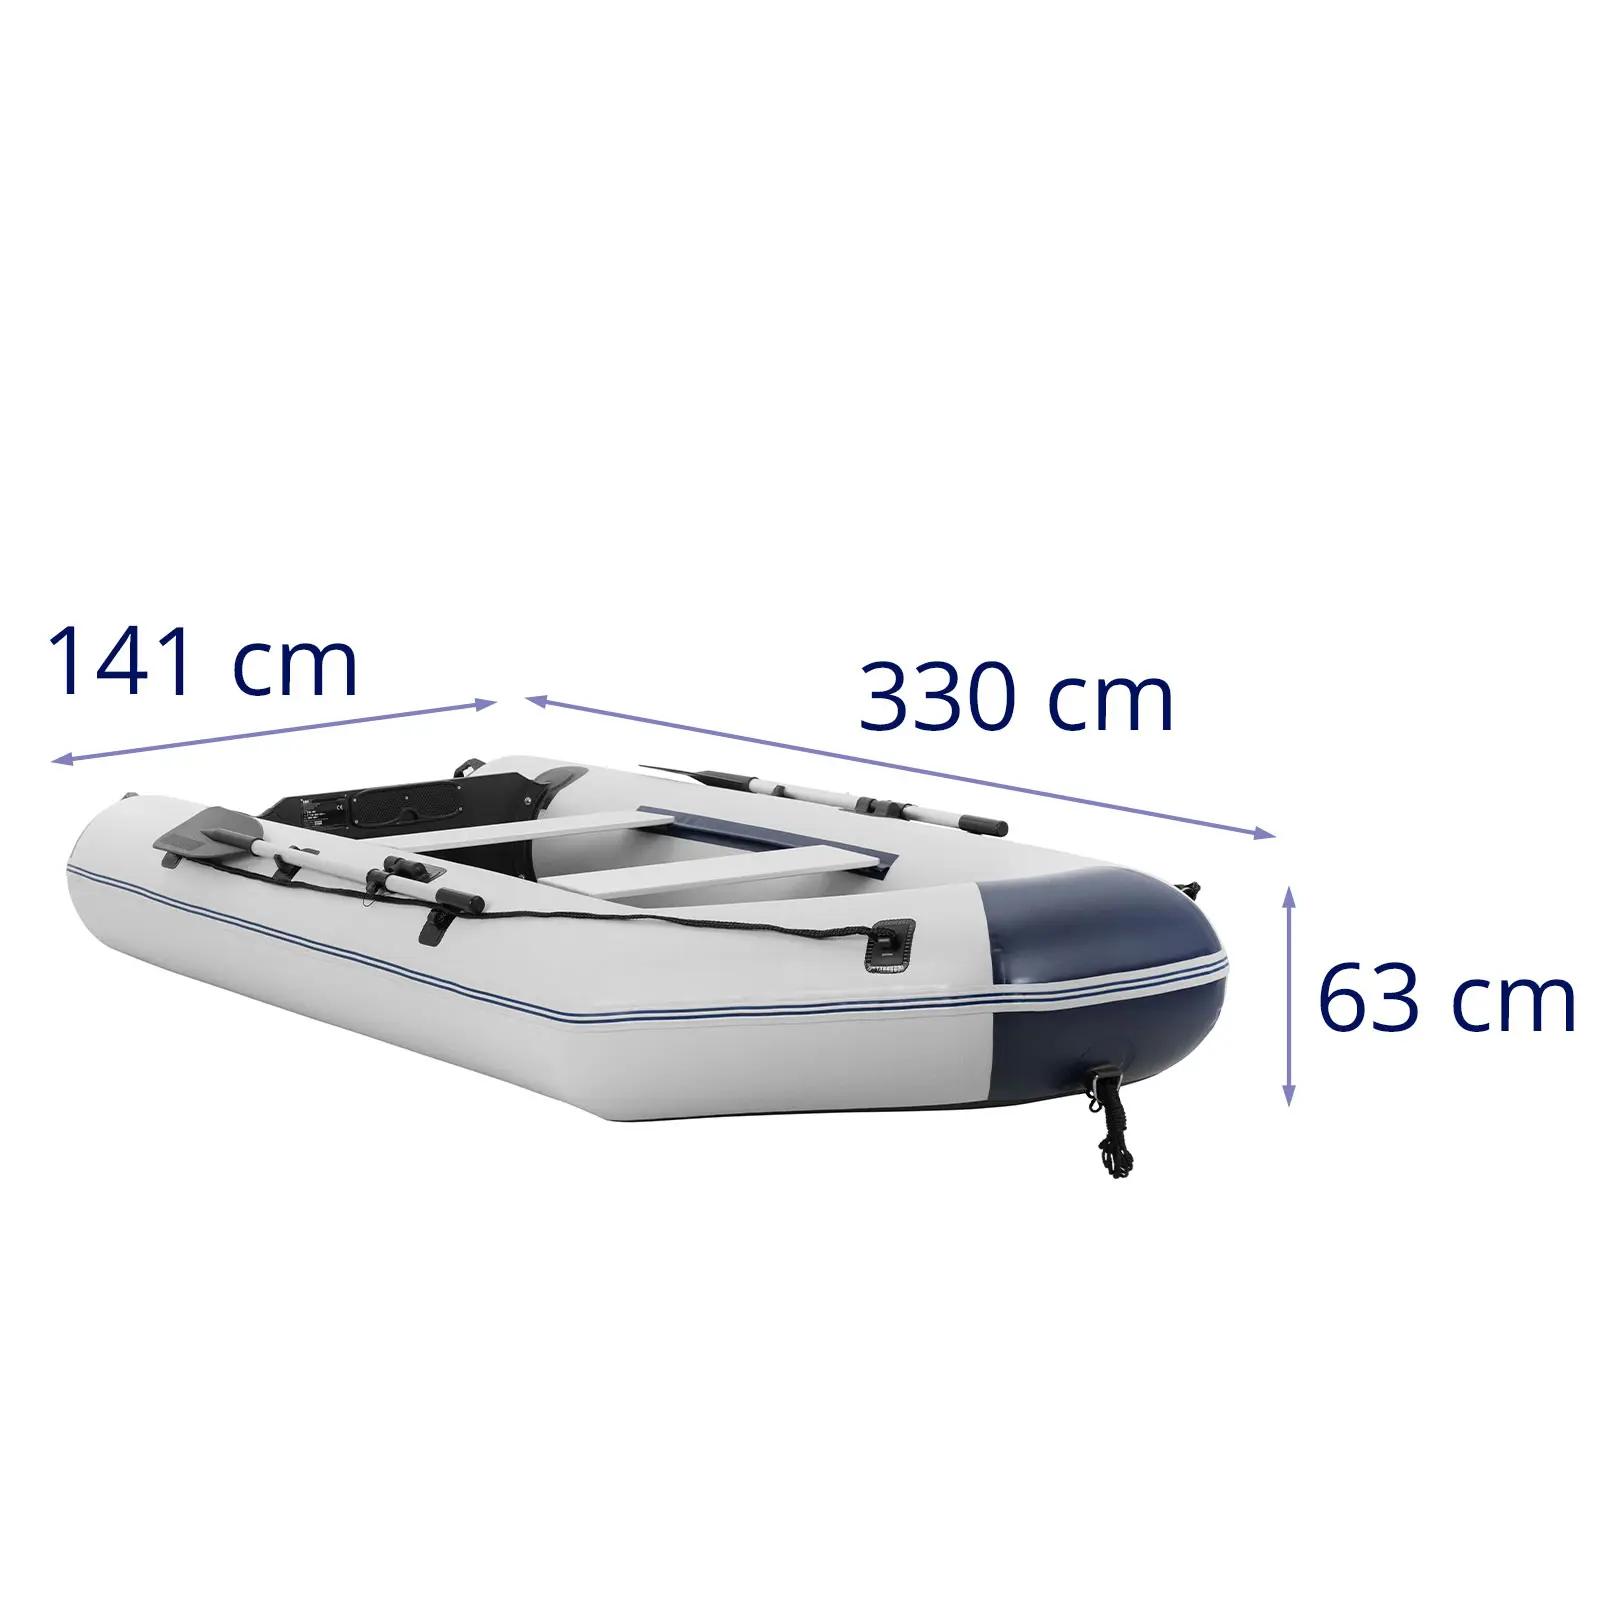 Nadmuchiwana łódź - czarny / biały - 403 kg - aluminiowa podłoga - 5 osób